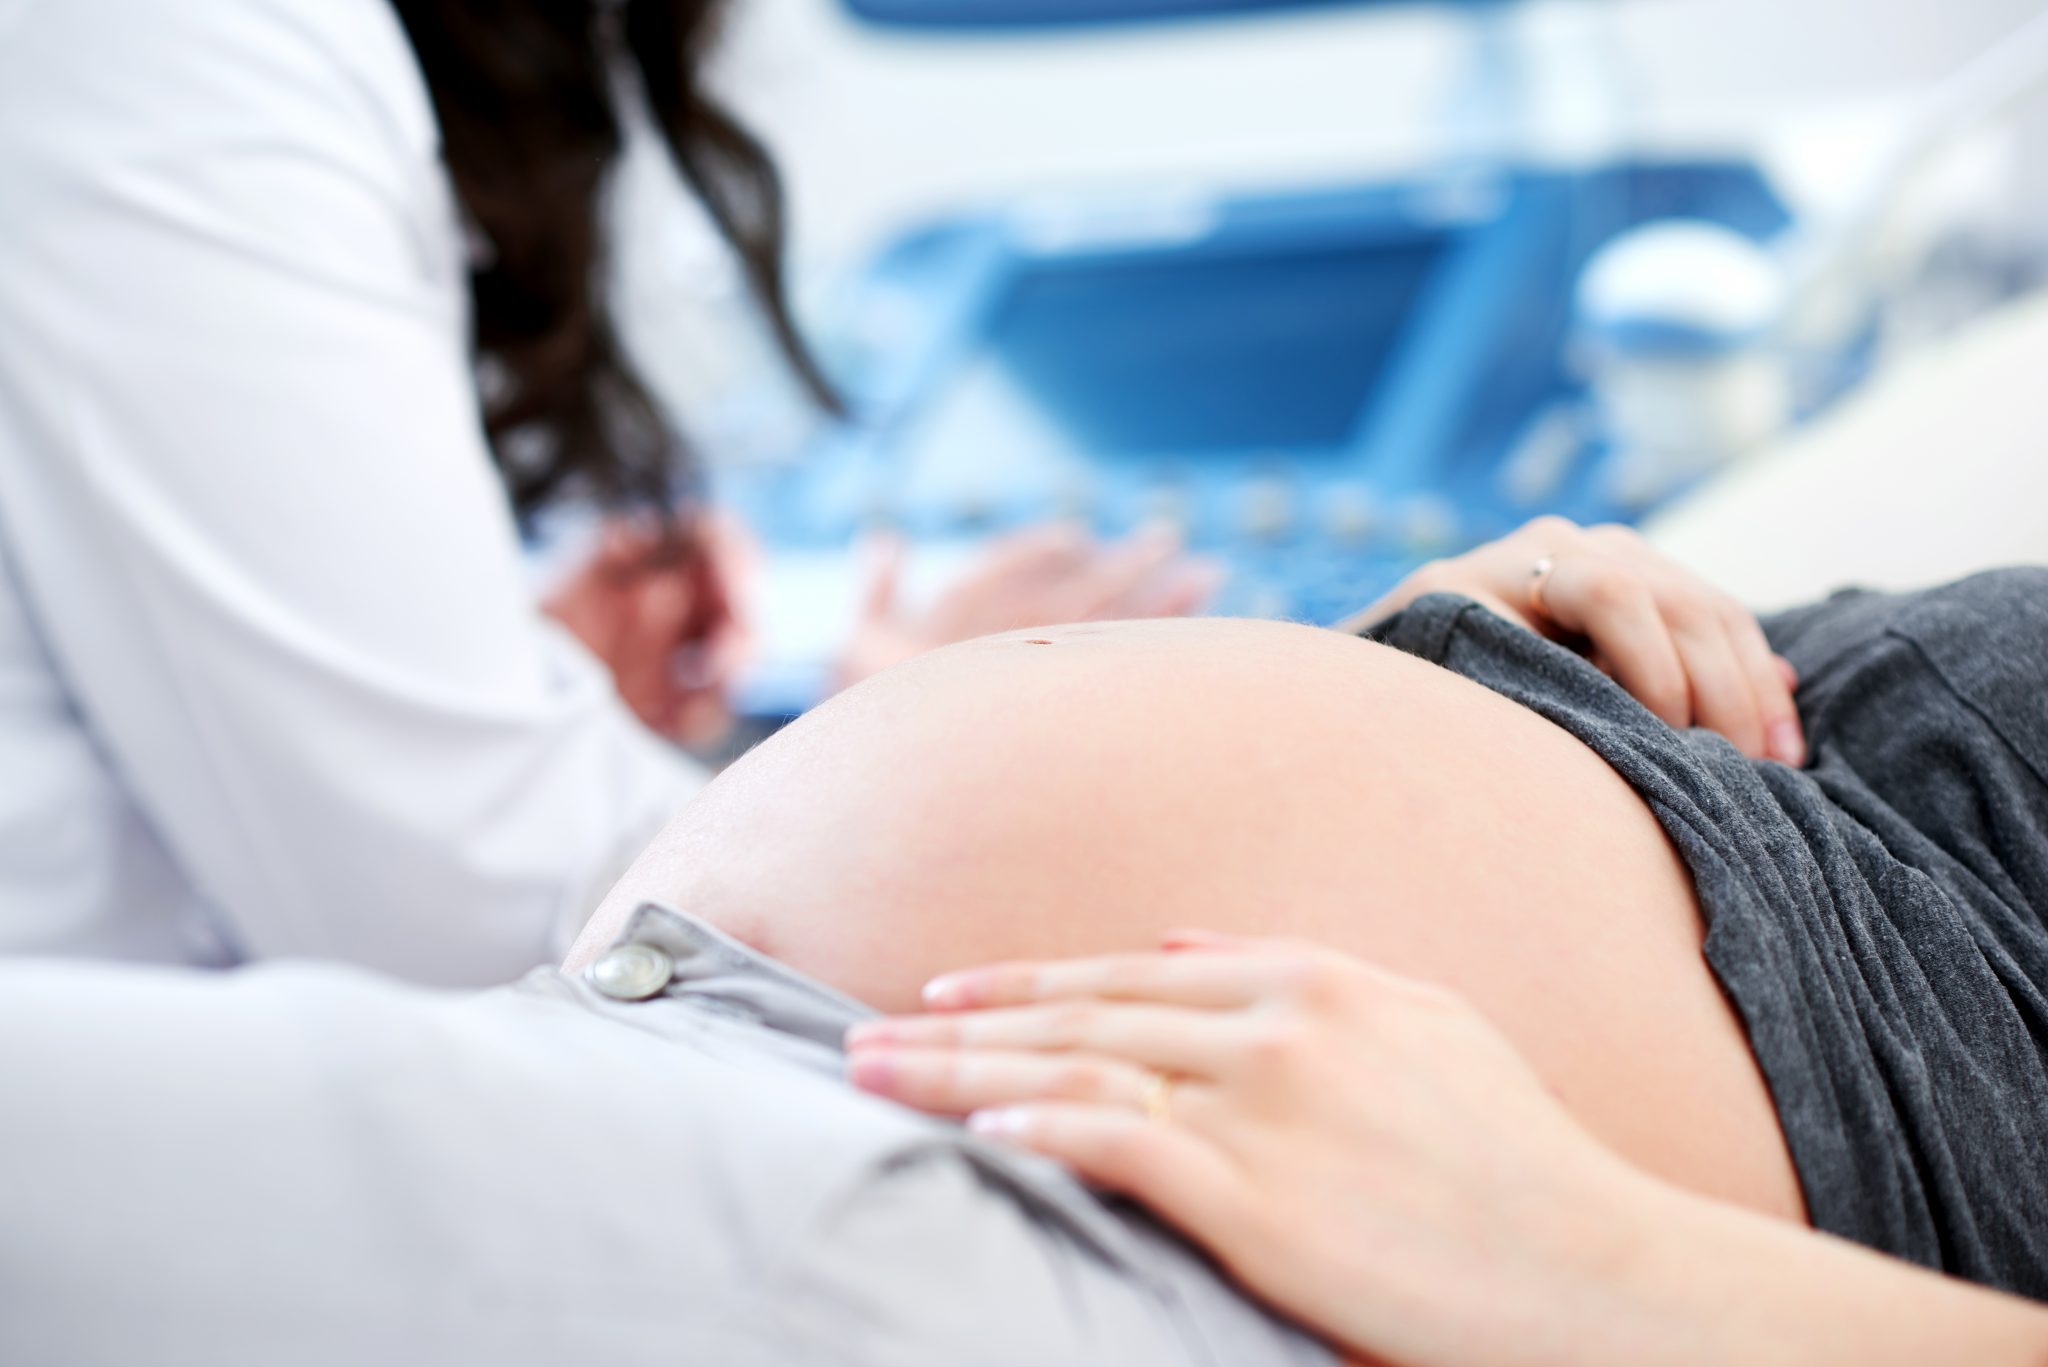 Rejestr ciąż - o co chodzi?